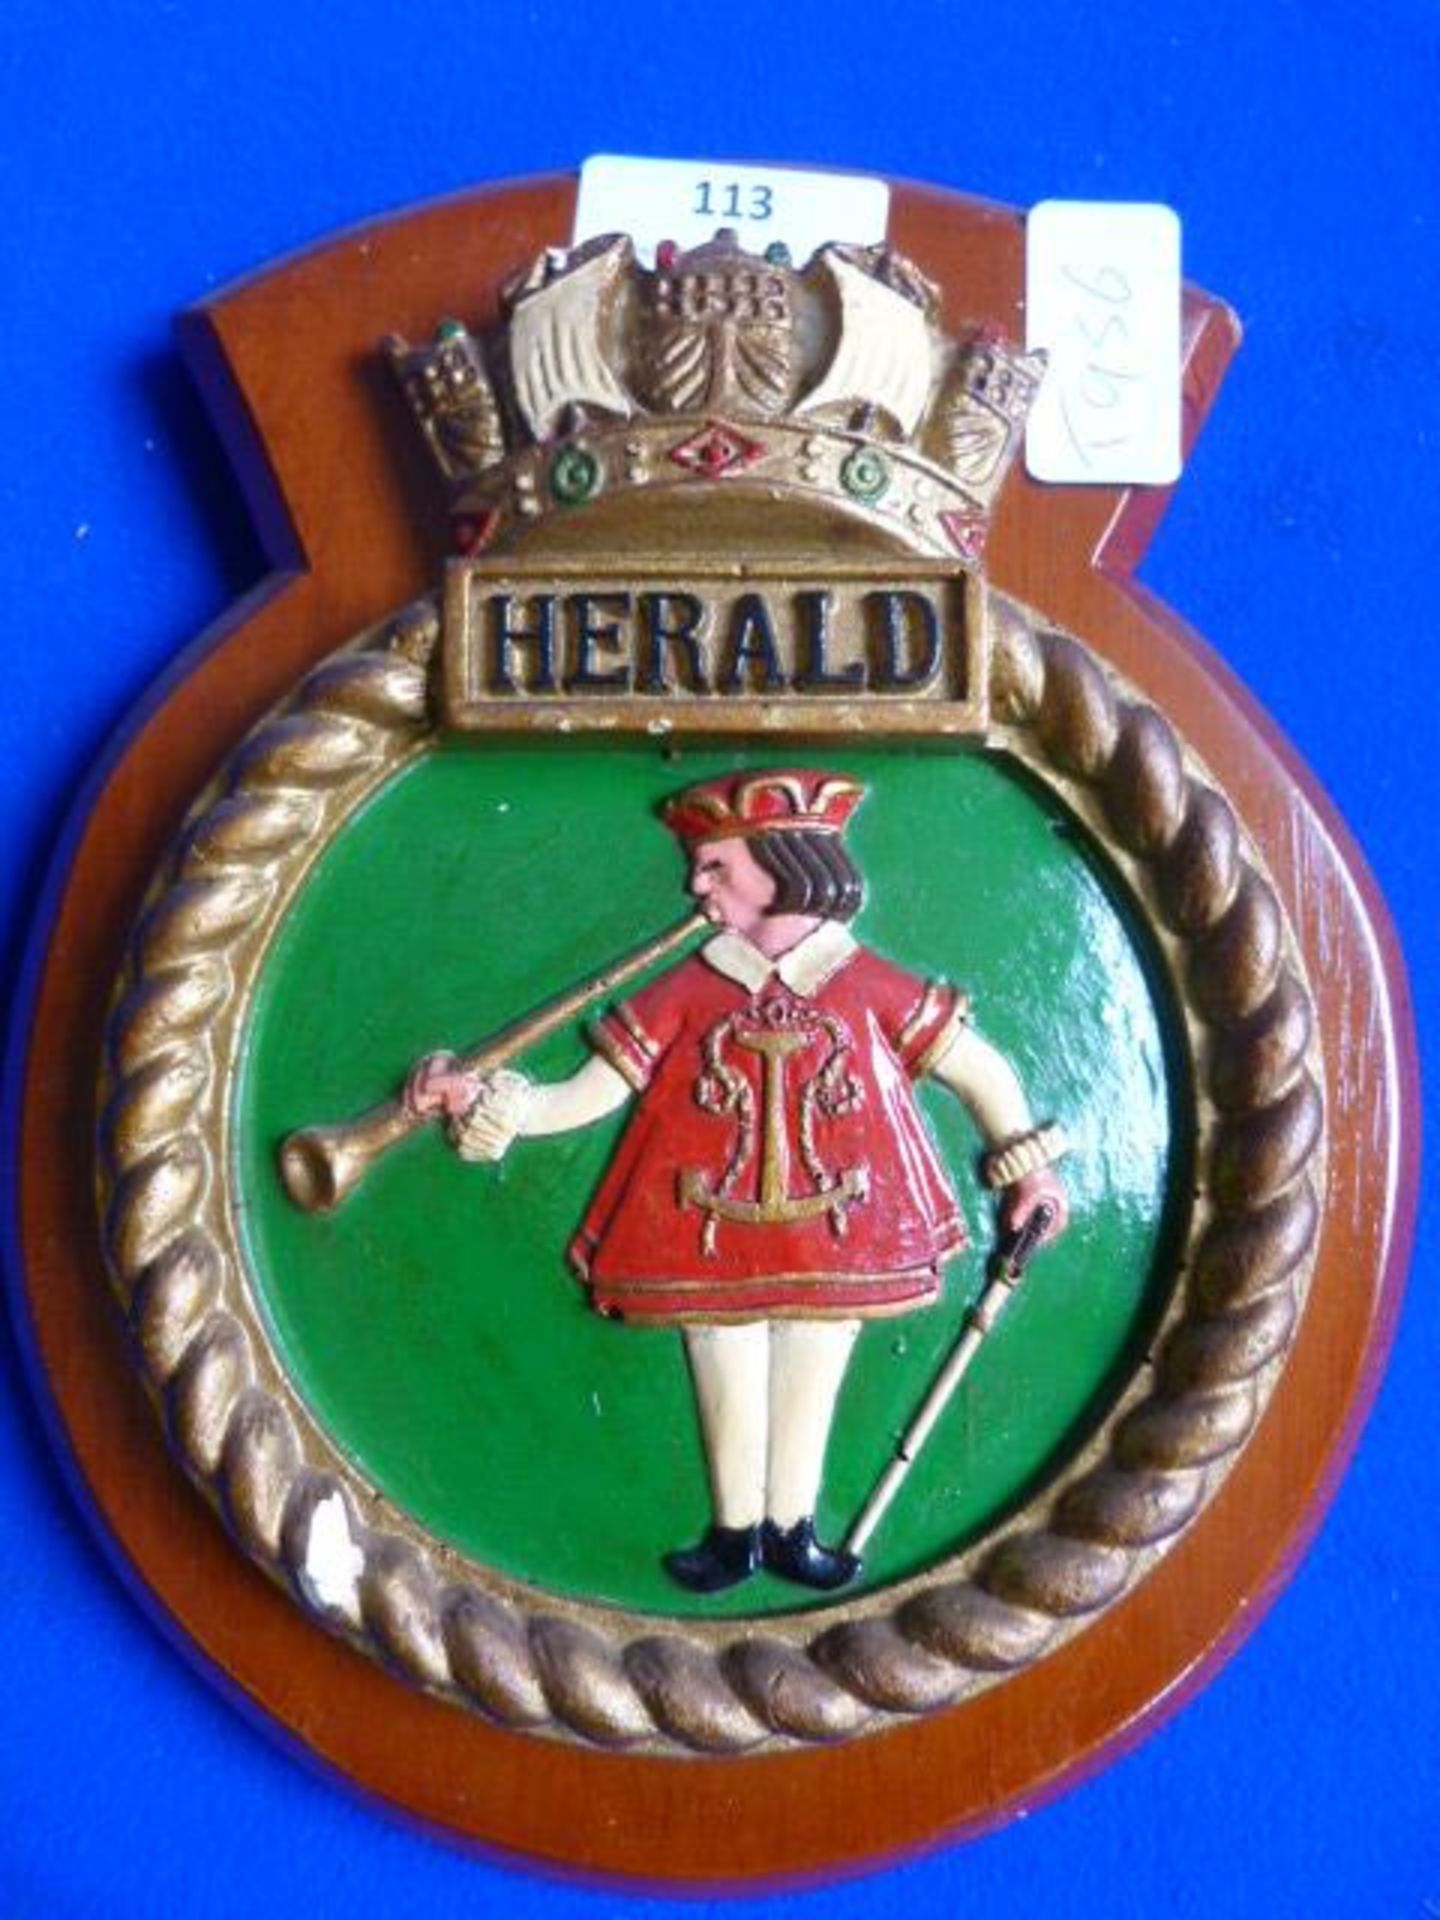 Wooden Naval Plaque - HMS Herald